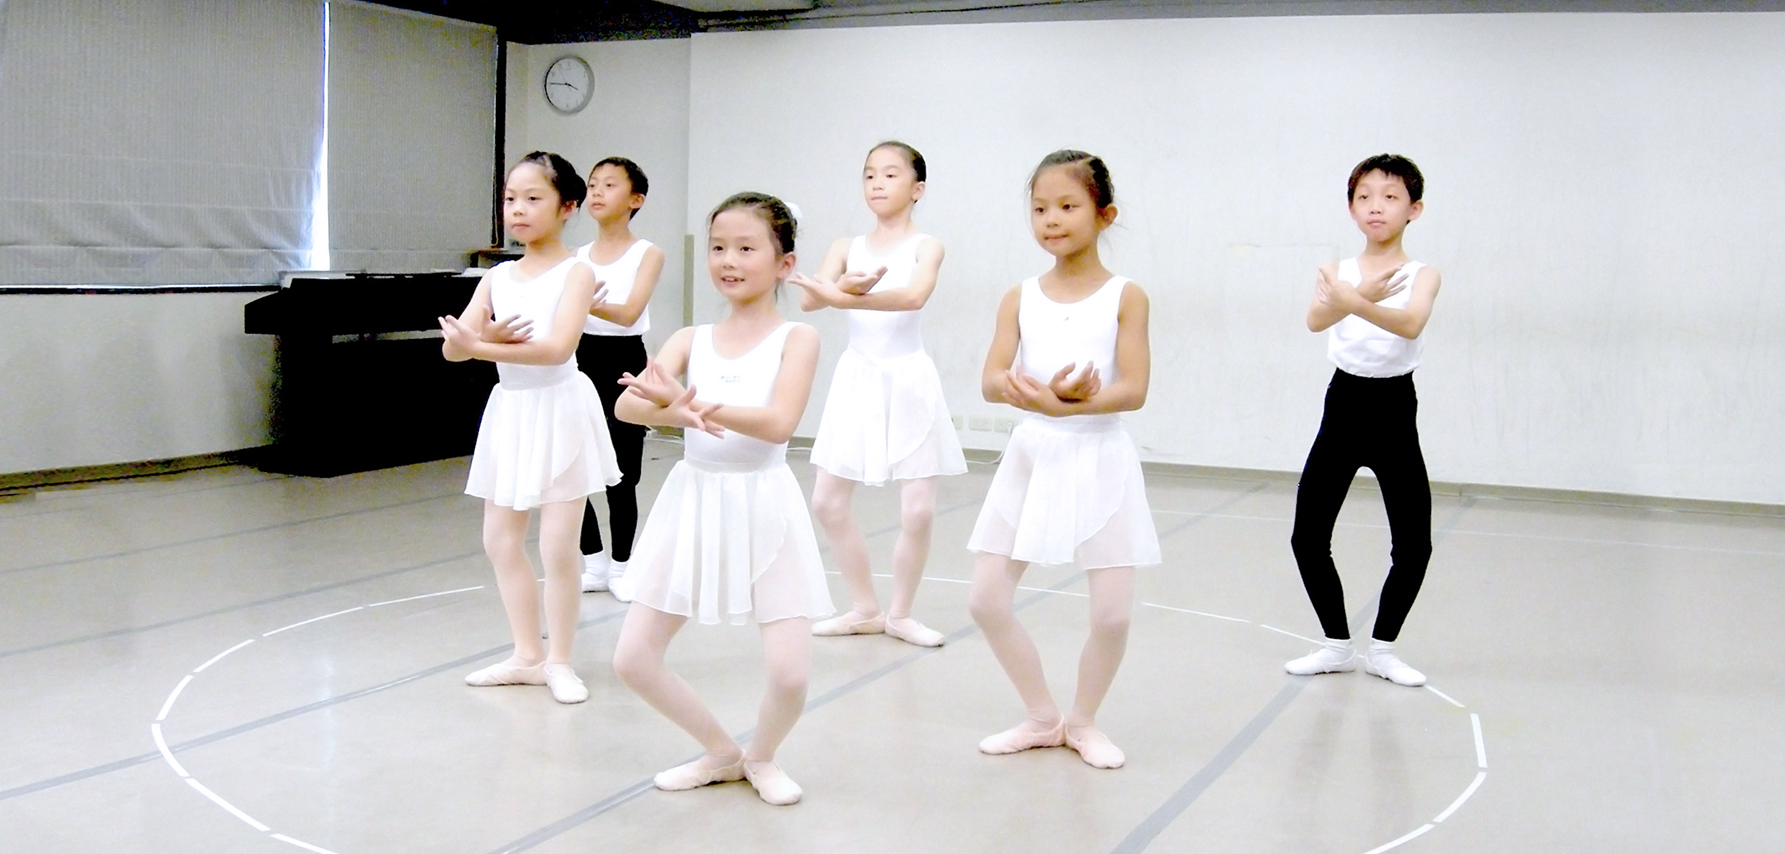 幼兒芭蕾課程內容上課環境